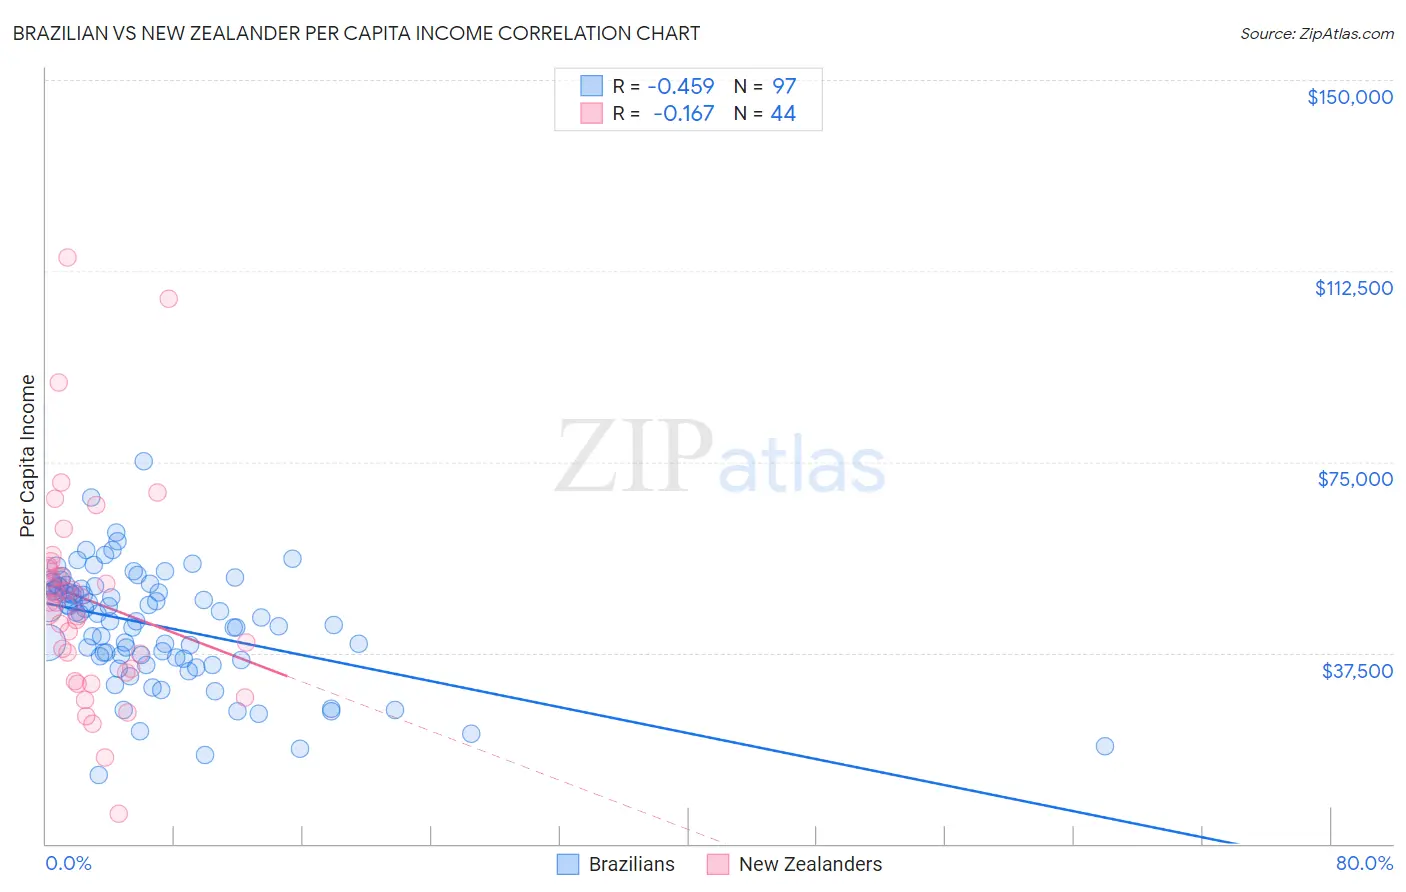 Brazilian vs New Zealander Per Capita Income